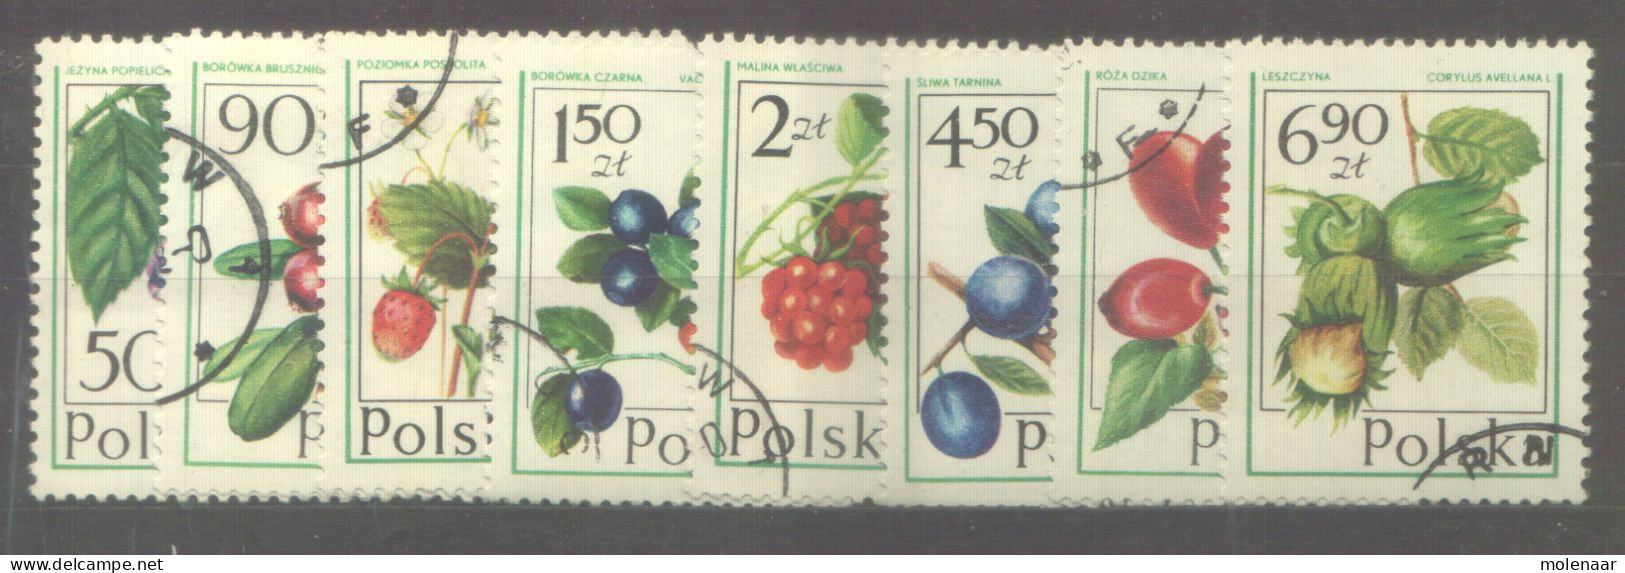 Postzegels > Europa > Polen > 1944-.... Republiek > 1971-80 > Gebruikt No. 2484-2491 (24140) - Gebruikt